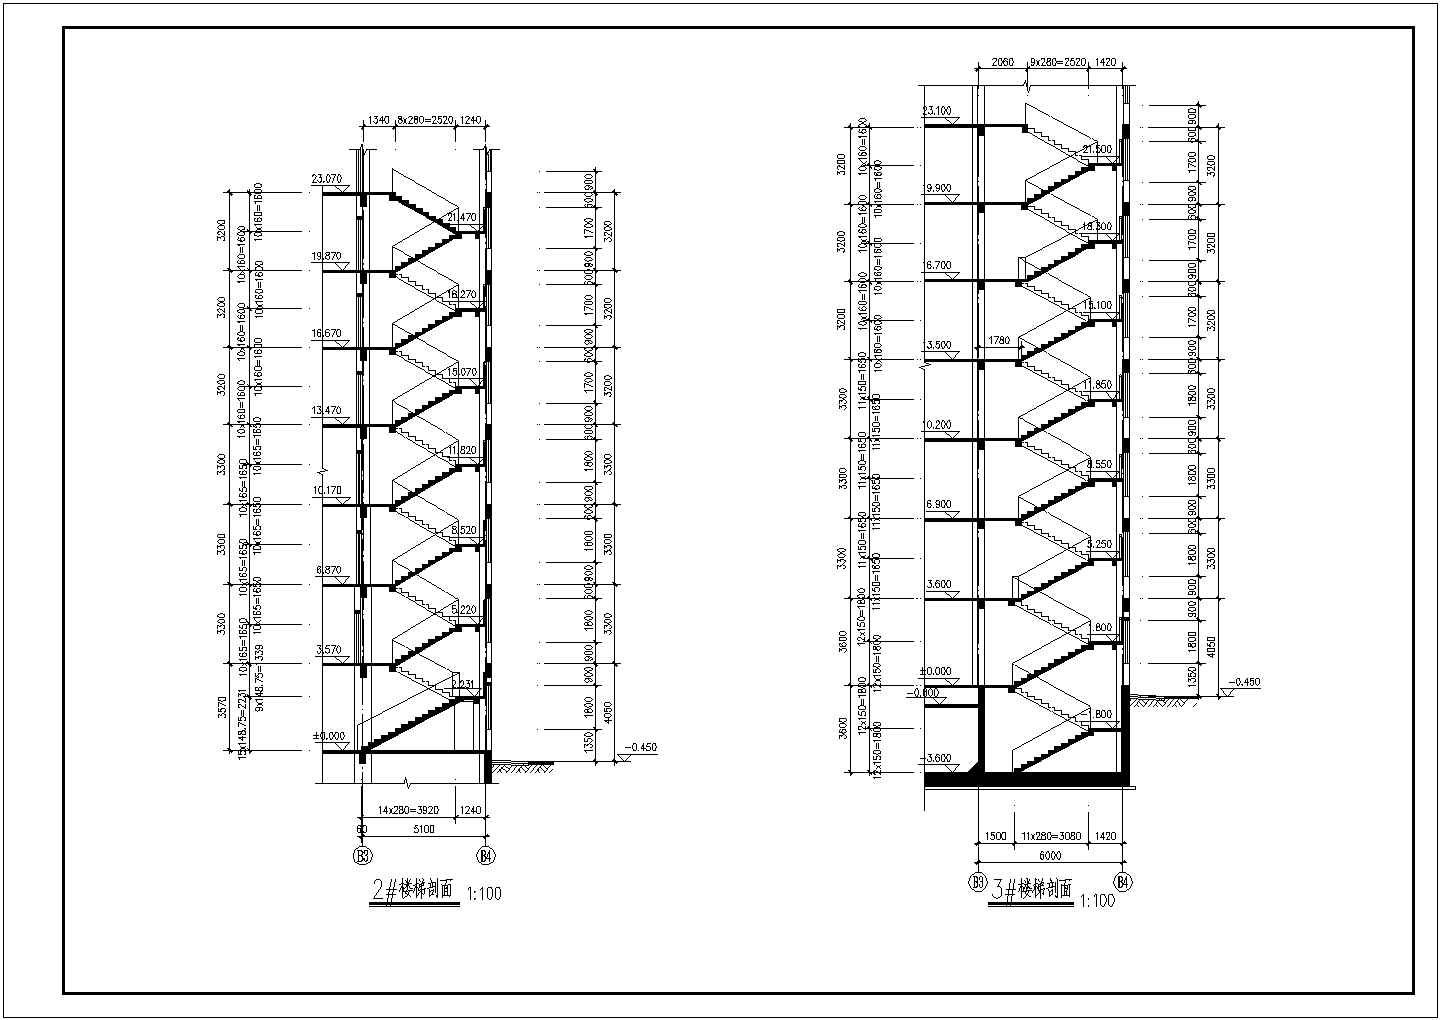 南京某钟山景区小型旅社全套建筑施工设计cad图纸(含机房层平面图)